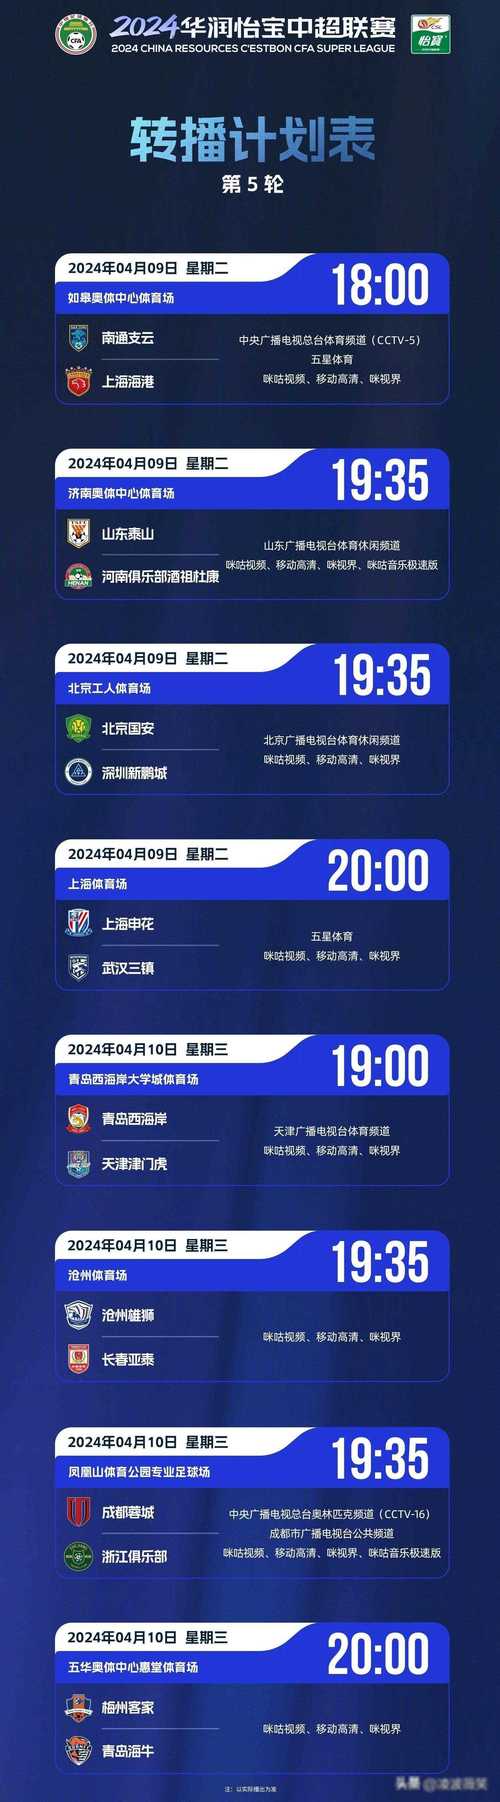 上海体育频道直播